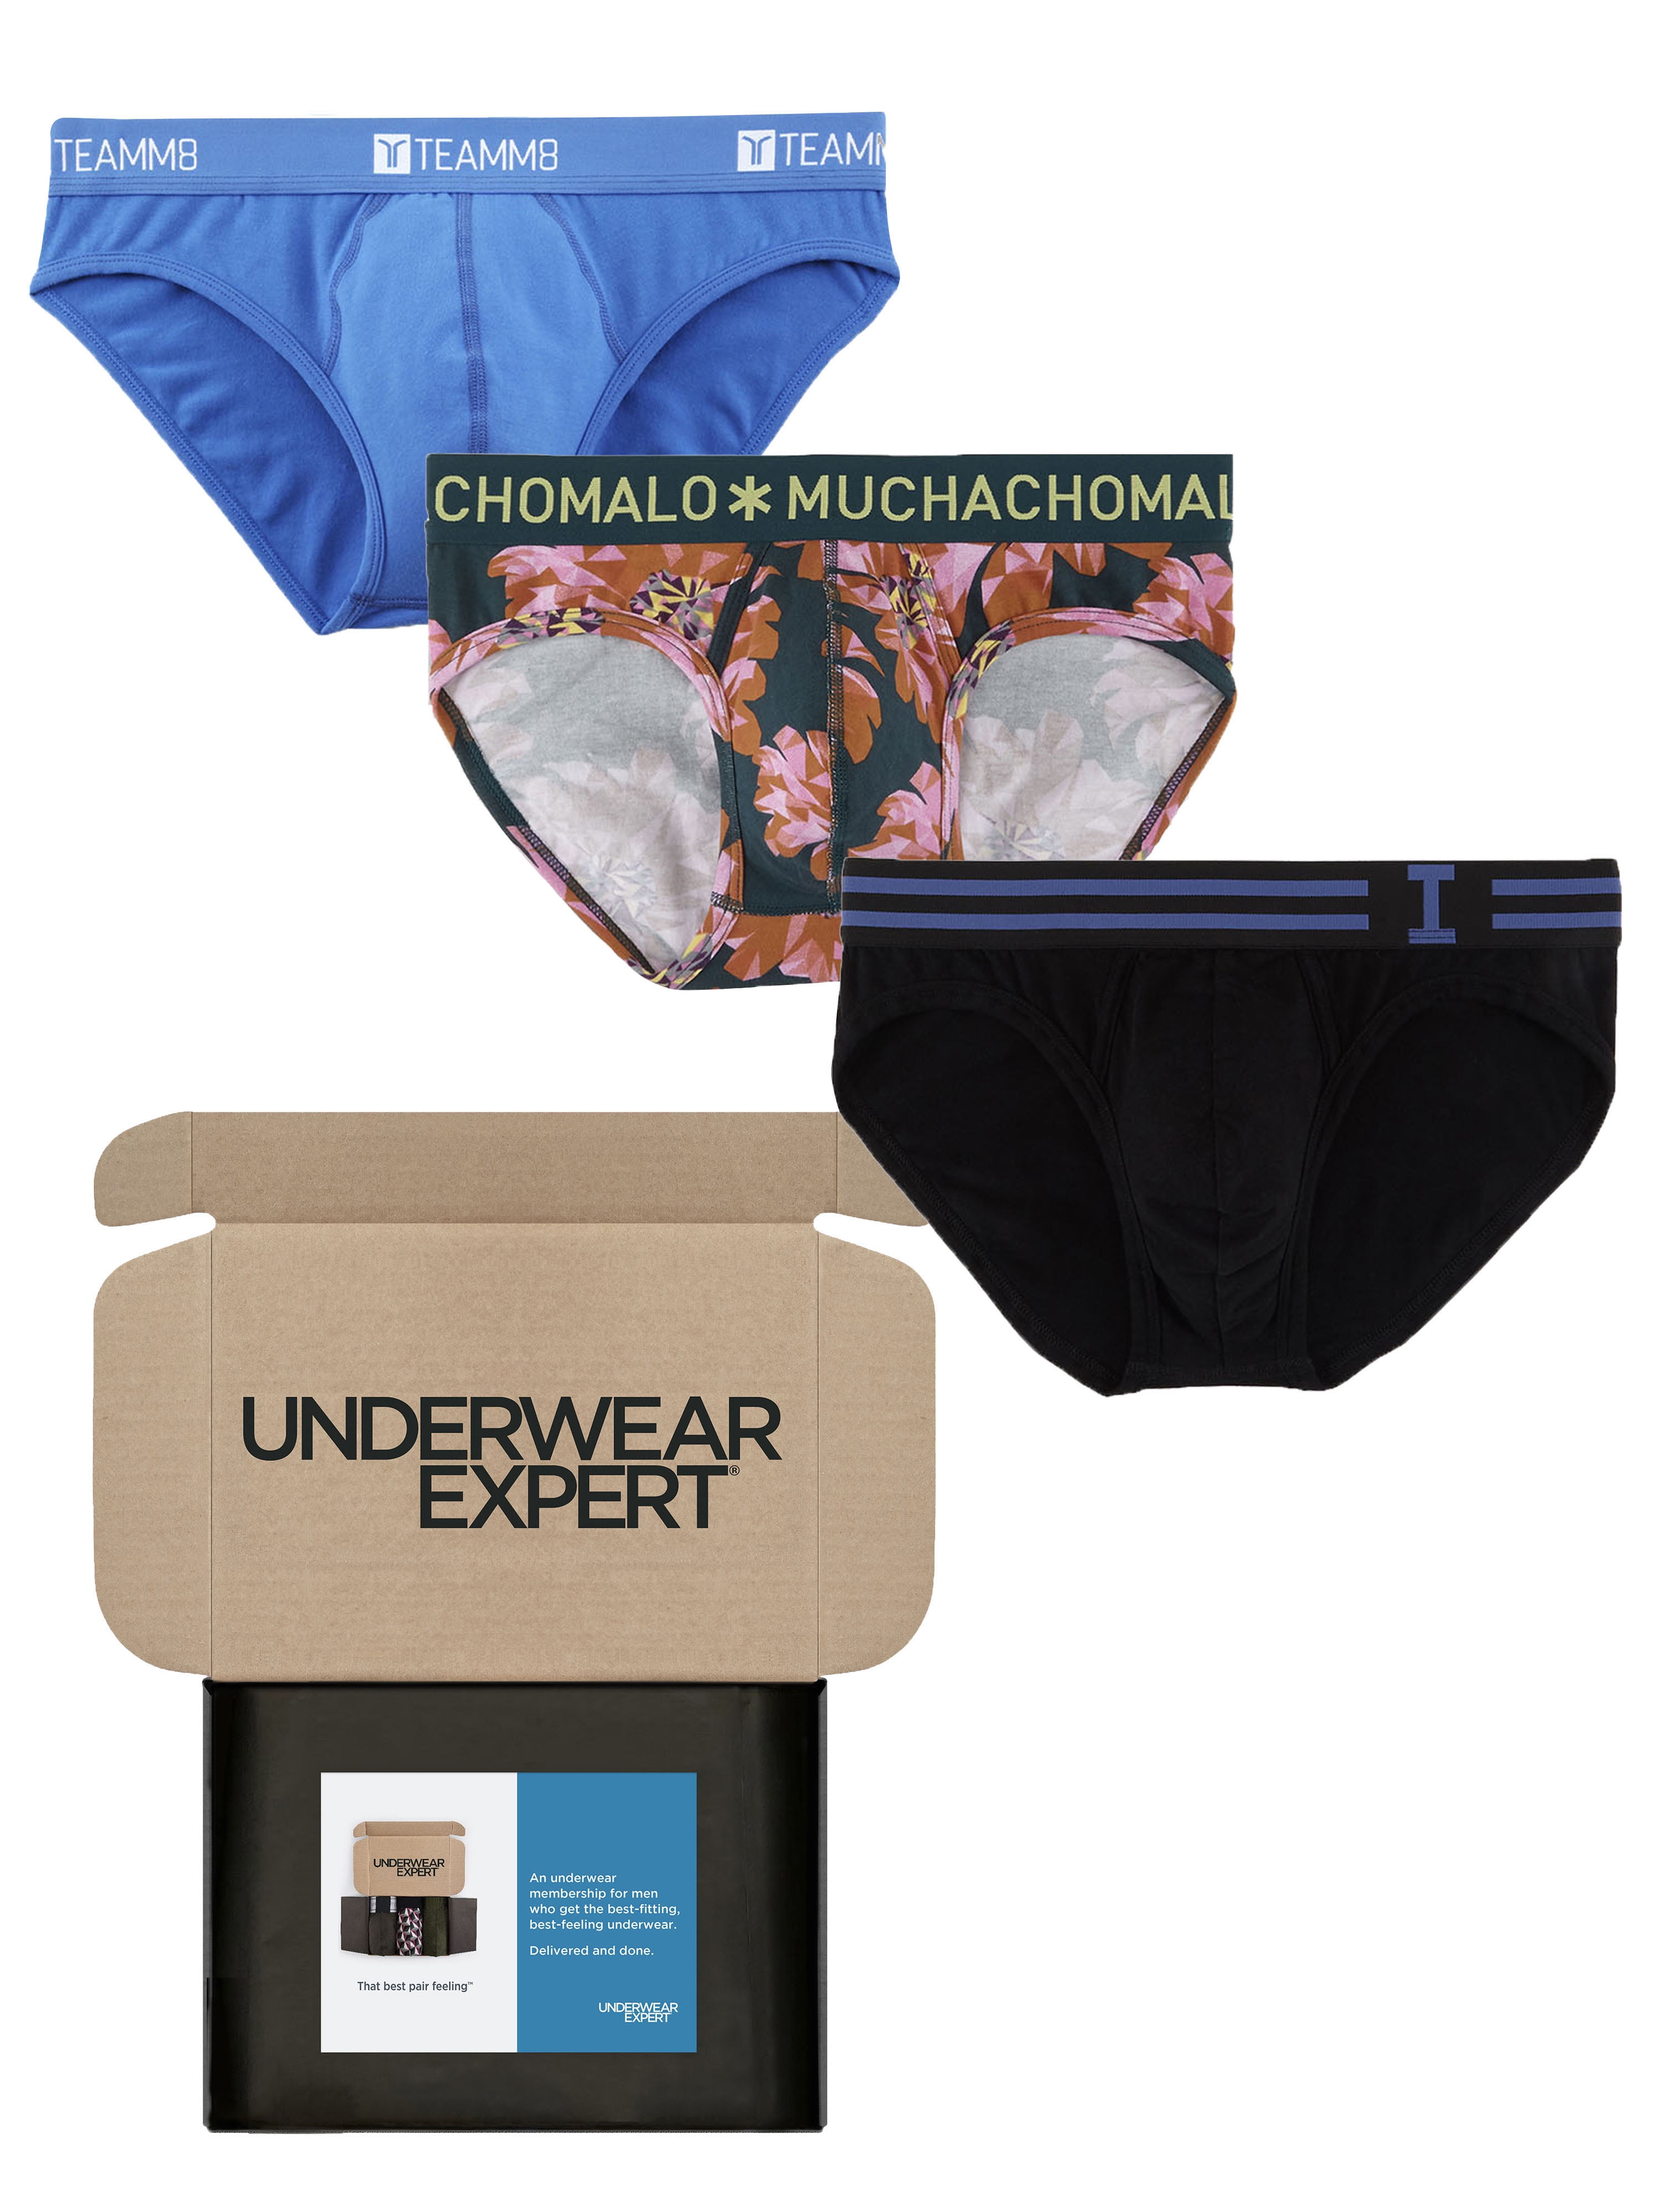 Teamm8 Super Low Brief - Underwear Expert